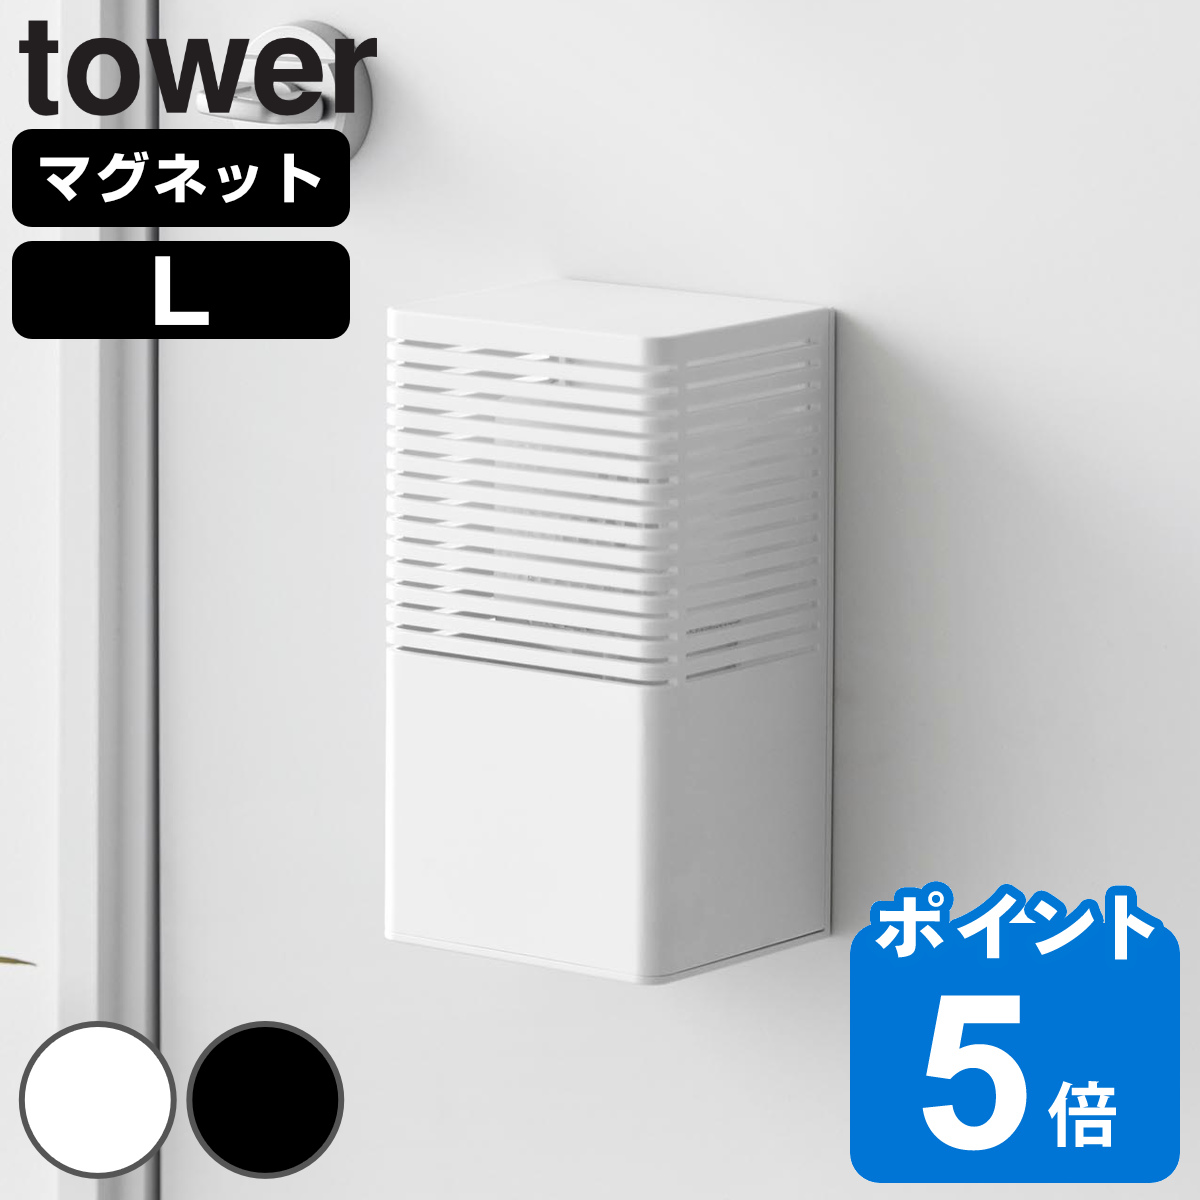 山崎実業 tower マグネット消臭剤ケース タワー L